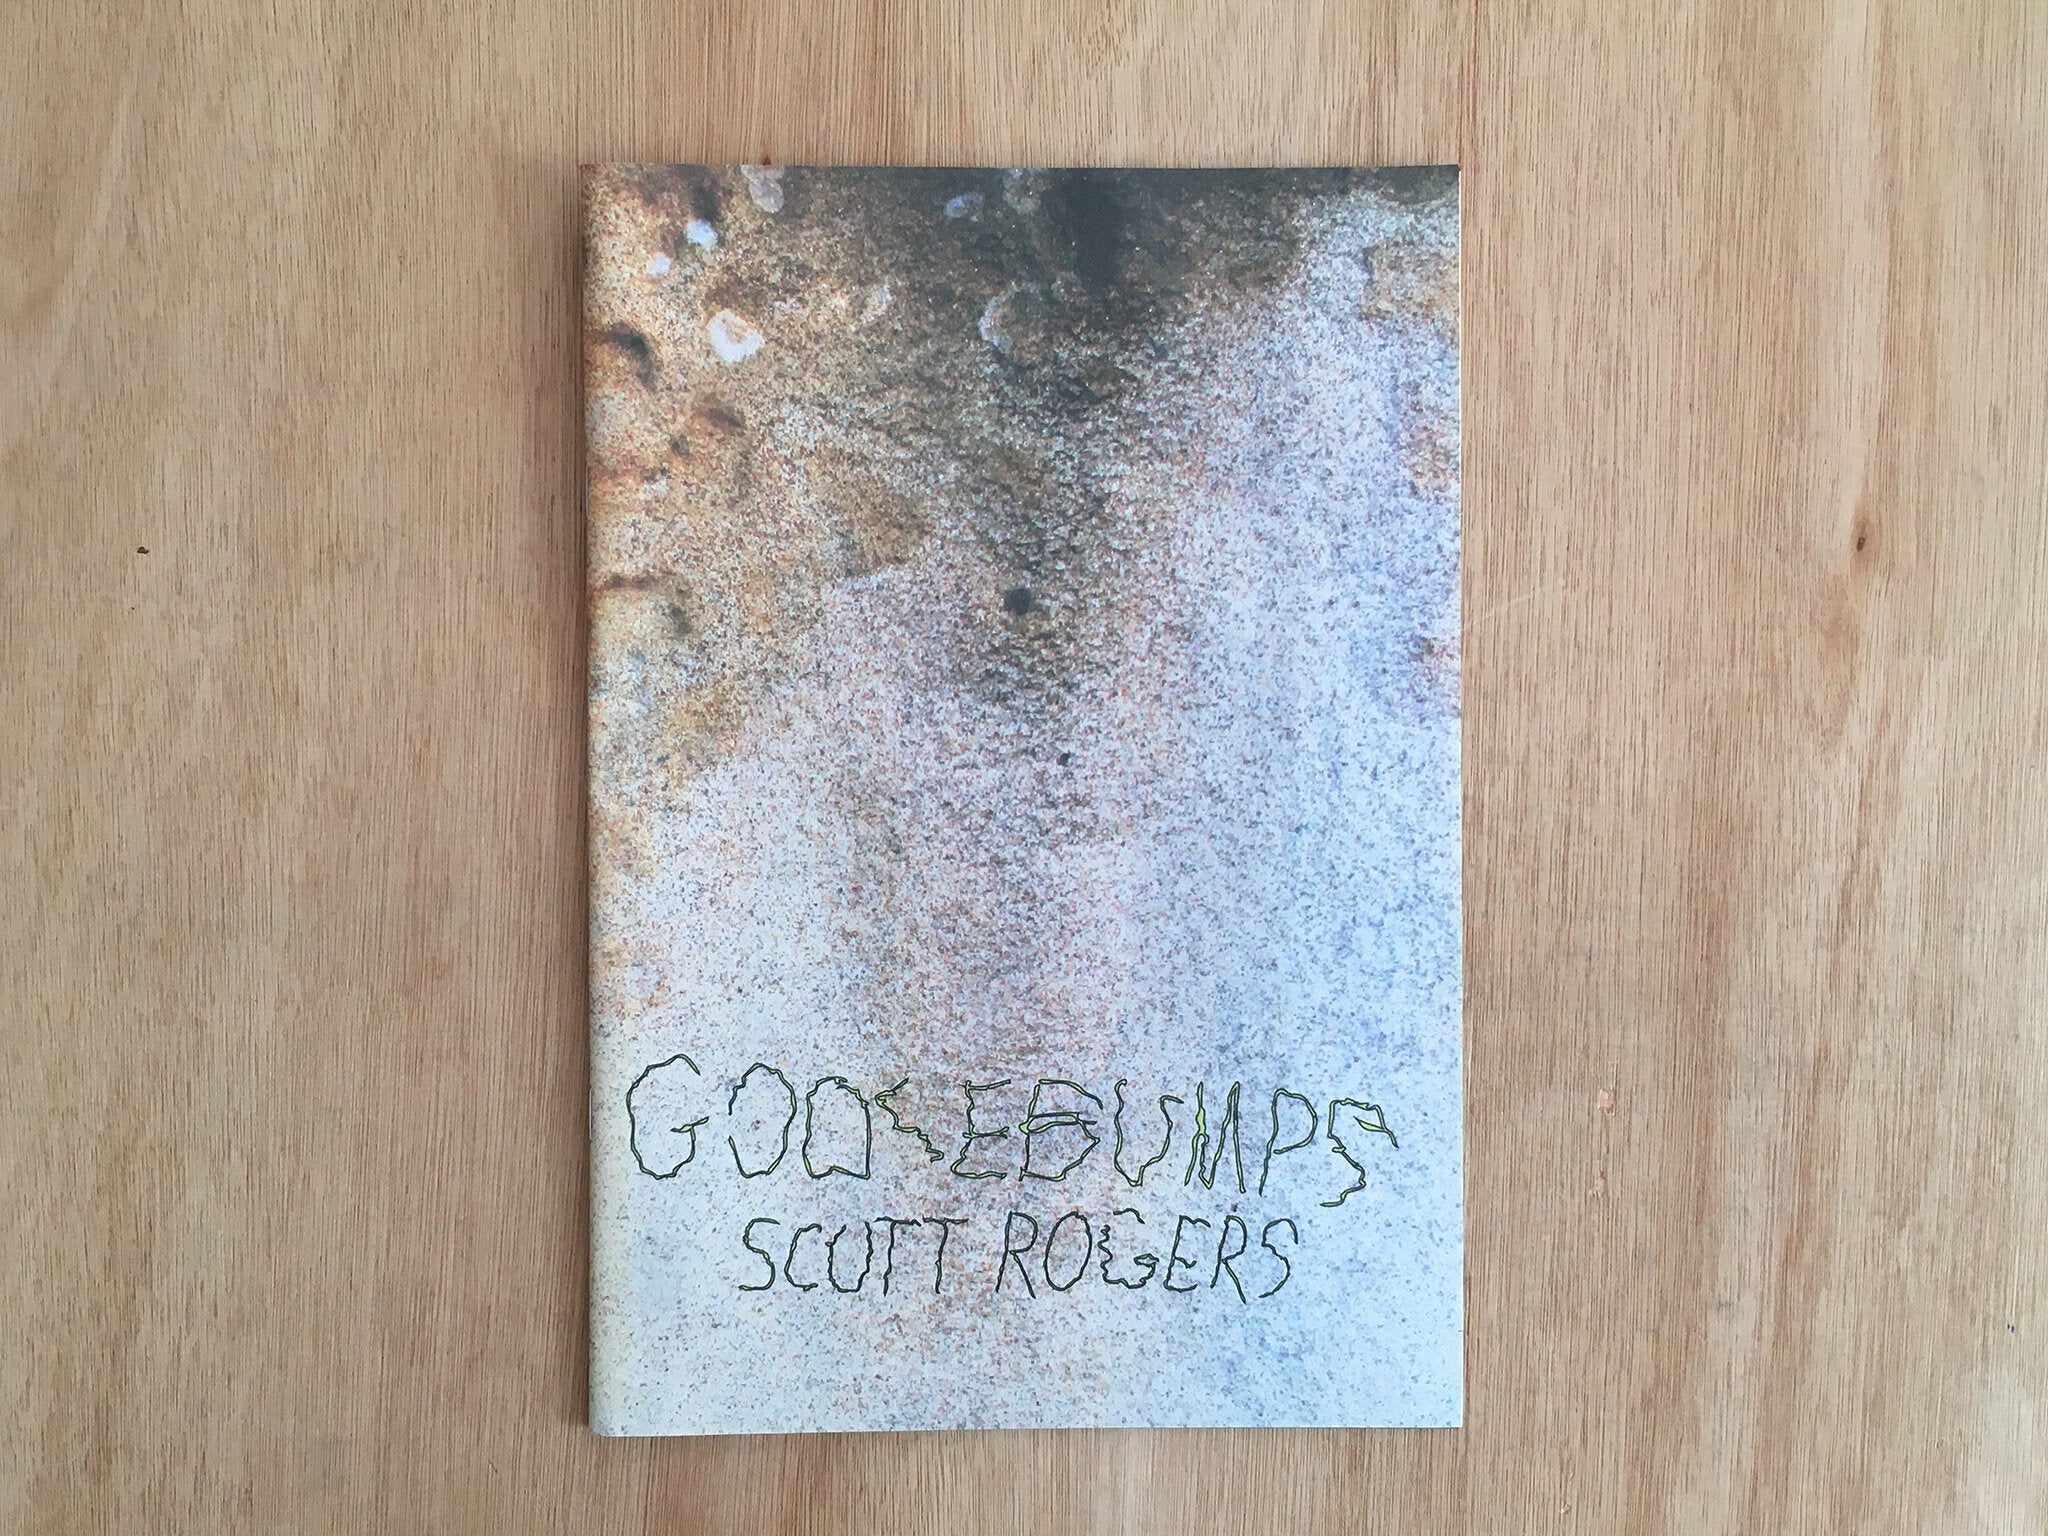 GOOSEBUMPS by Scott Rogers